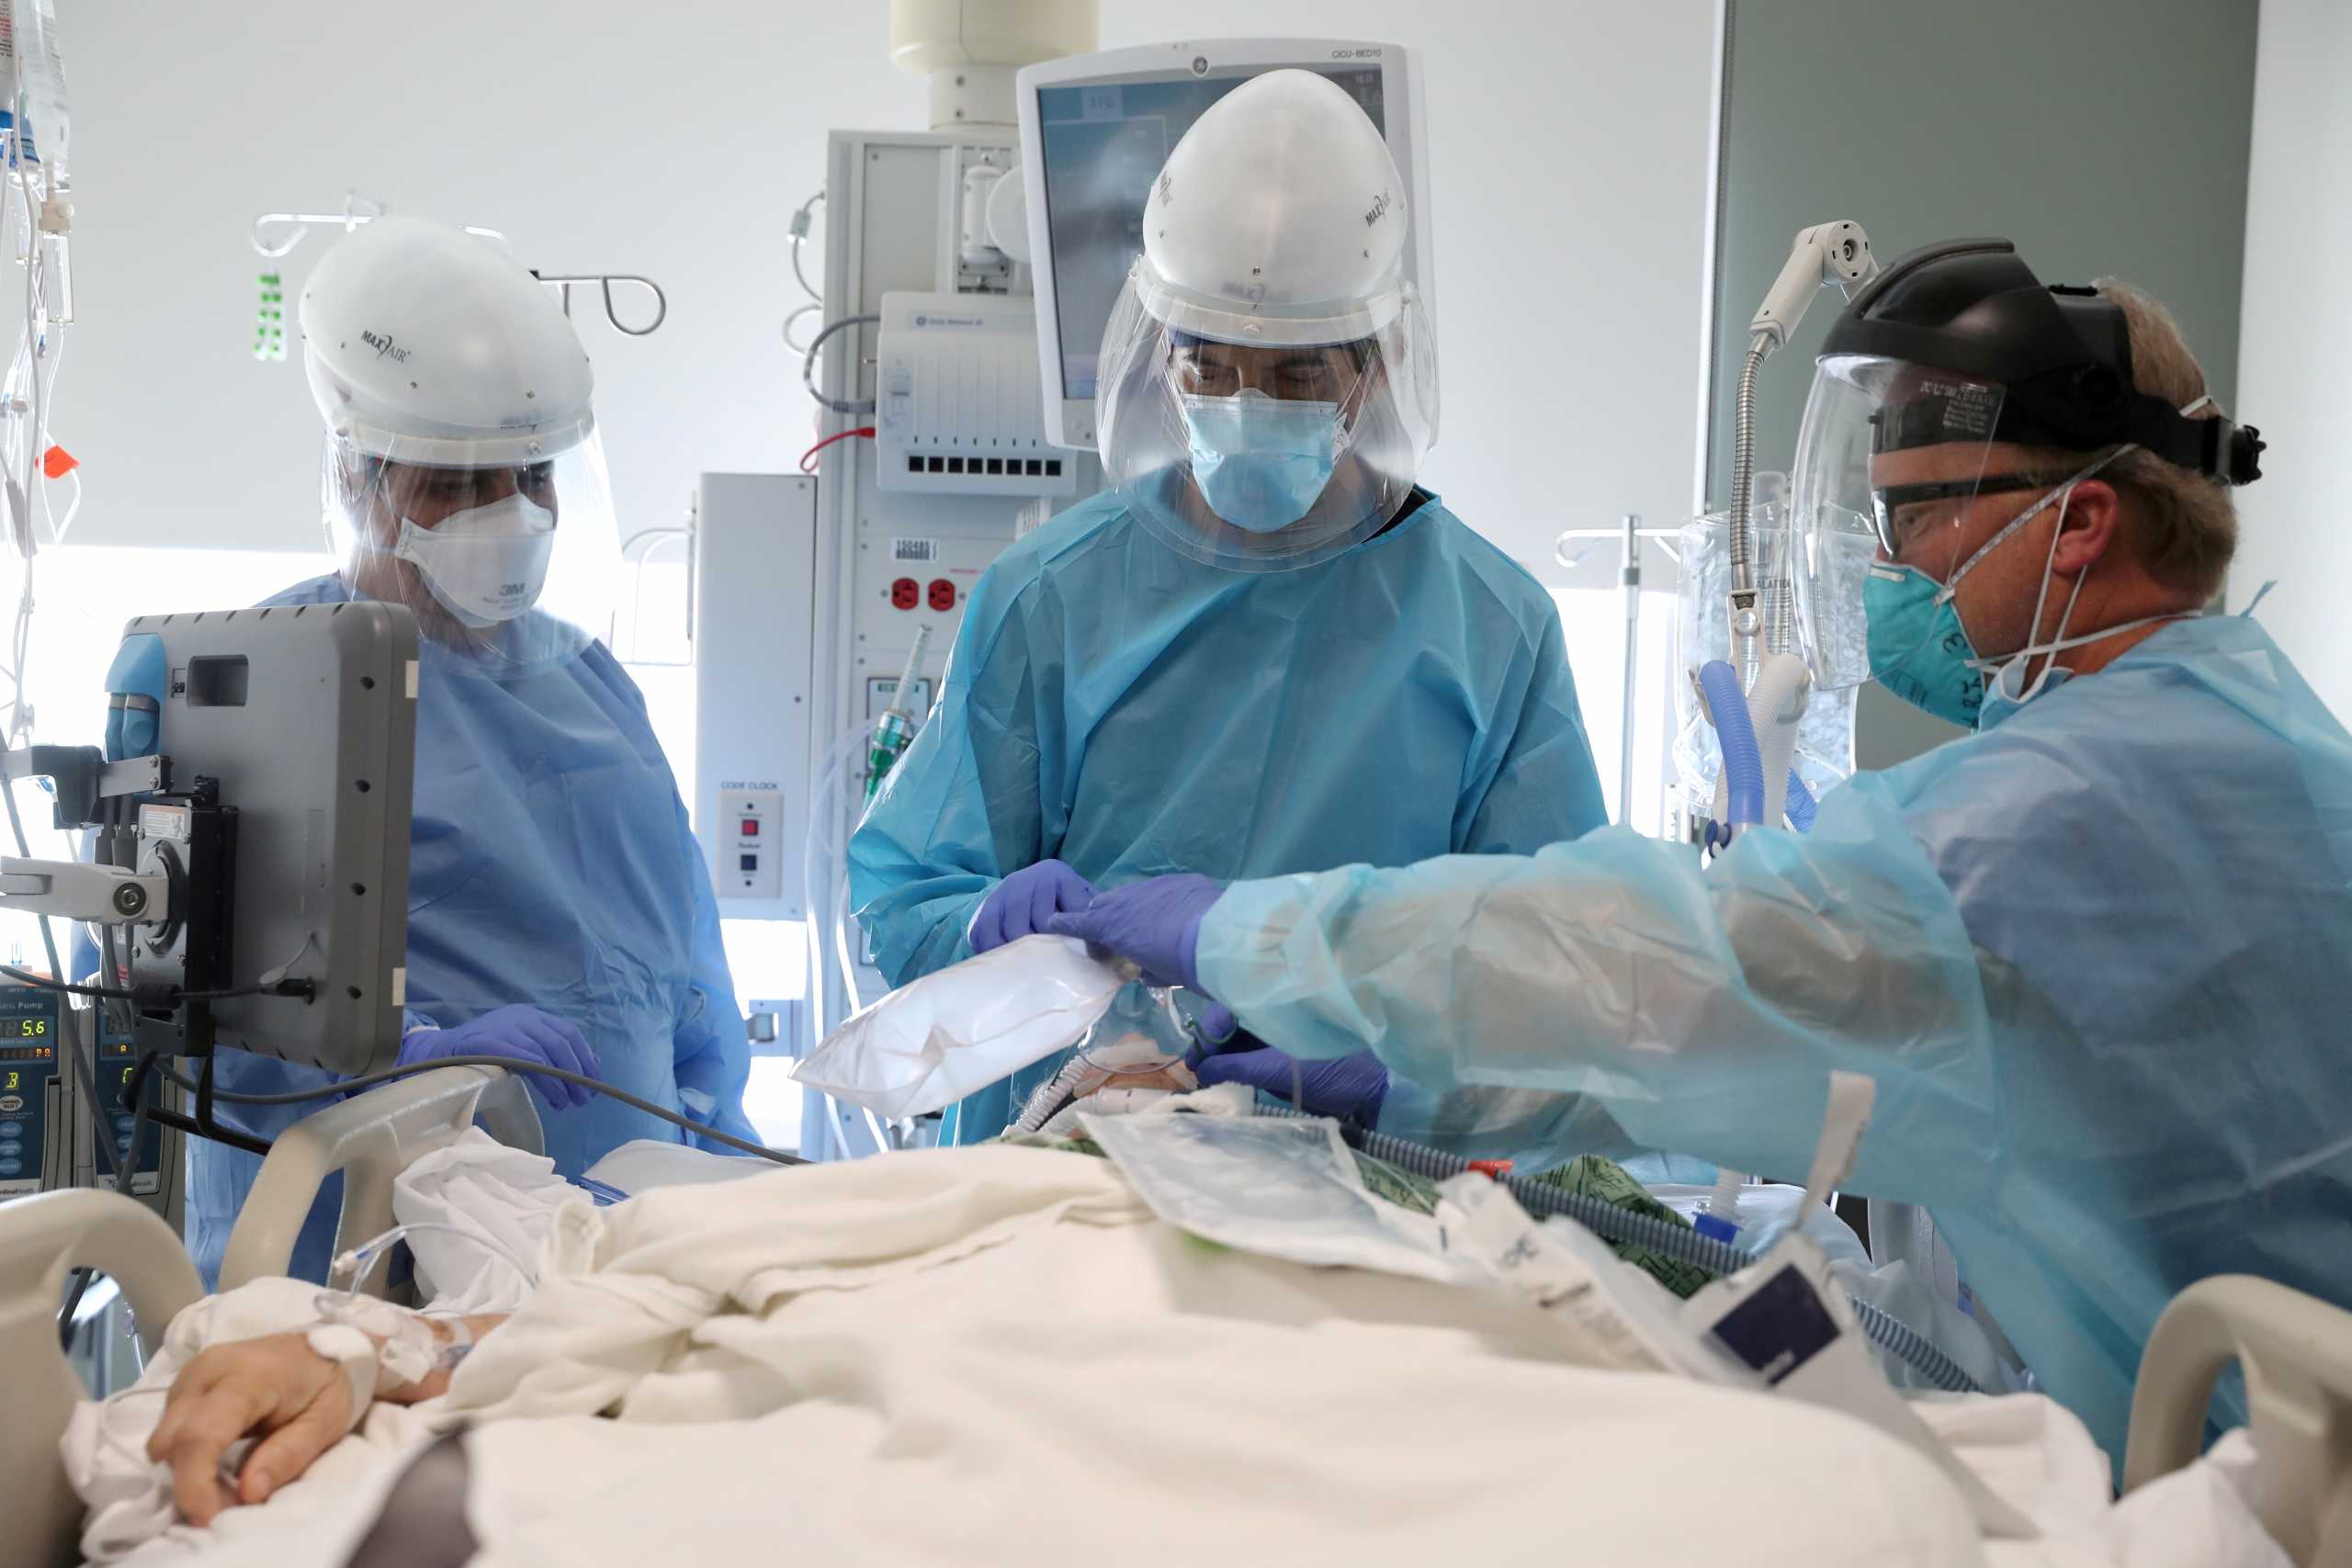 Κορονοϊός - ΗΠΑ: Αναβάλλονται χειρουργεία λόγω της μετάλλαξης Όμικρον και της έλλειψης προσωπικού